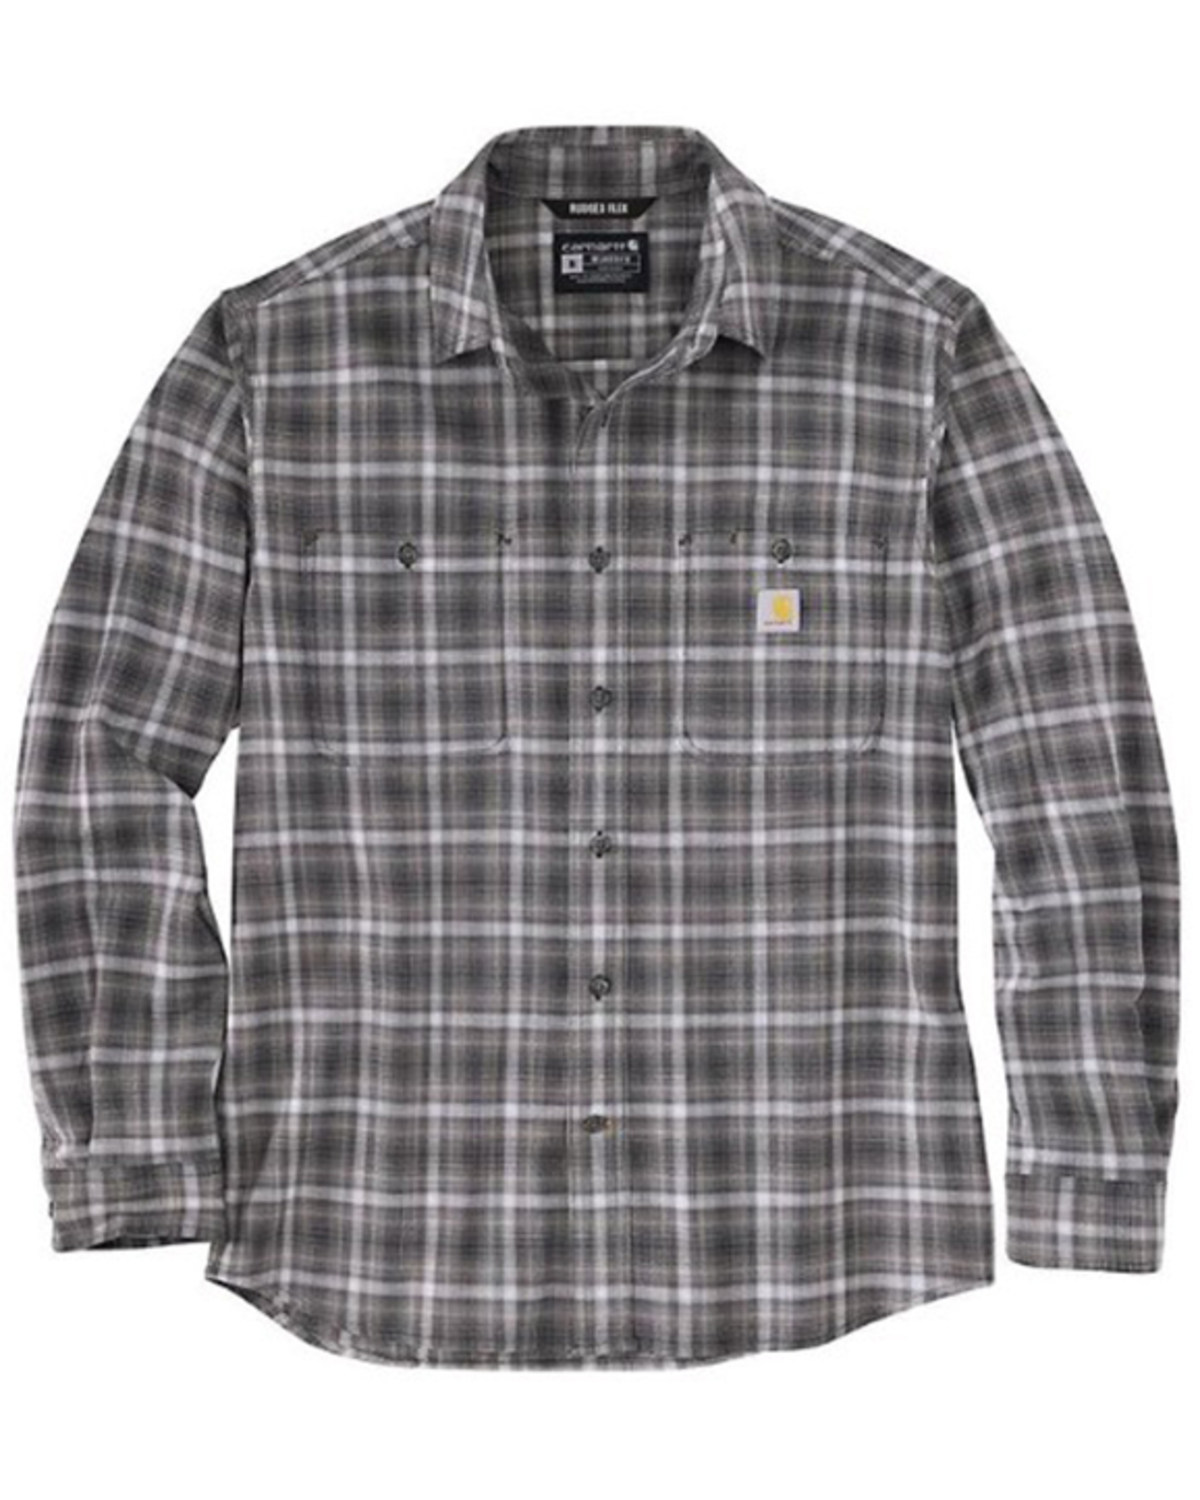 Carhartt Men's Relaxed Fit Lightweight Plaid Print Long Sleeve Button-Down Work Shirt